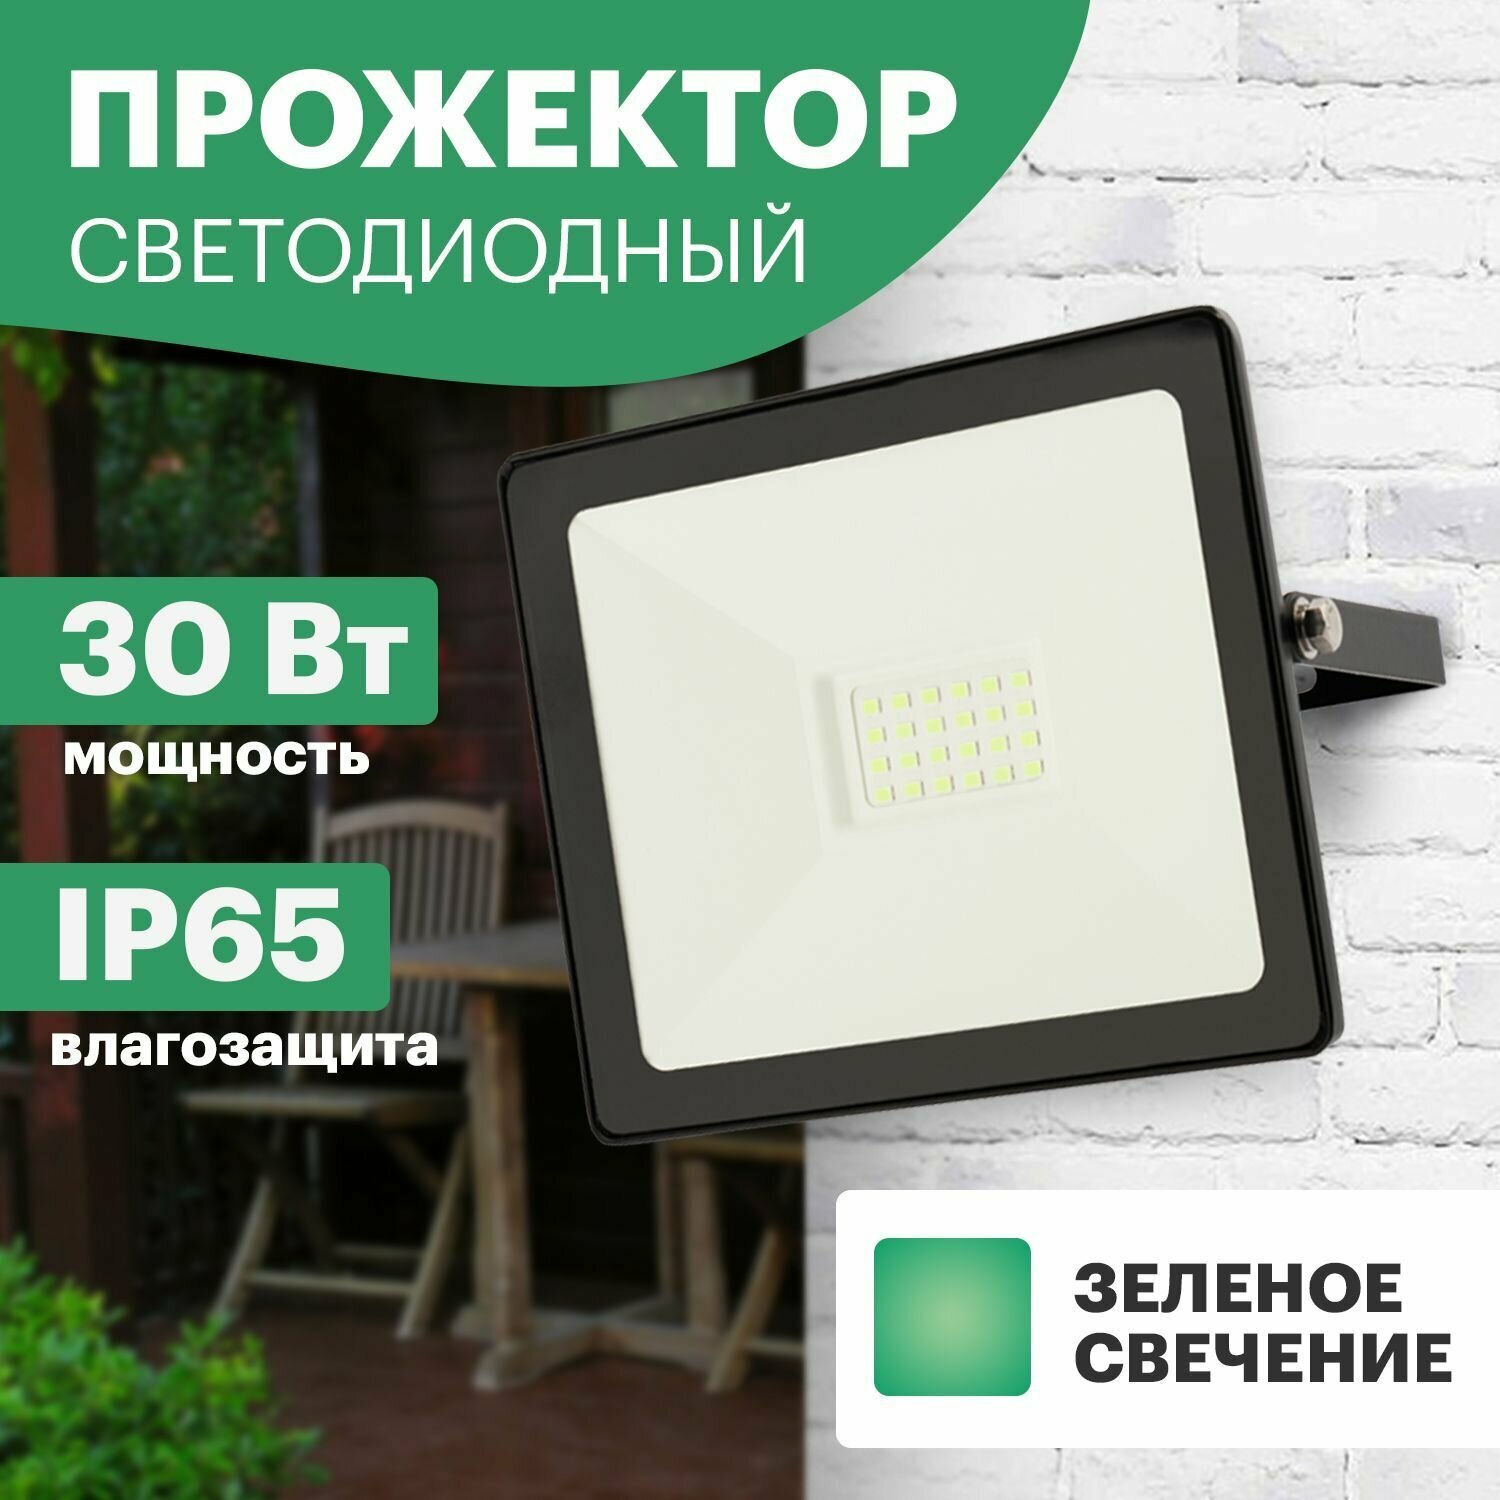 Прожектор светодиодный уличный садовый REXANT 30 Вт с зеленым свечением и площадью освещения до 30 м2